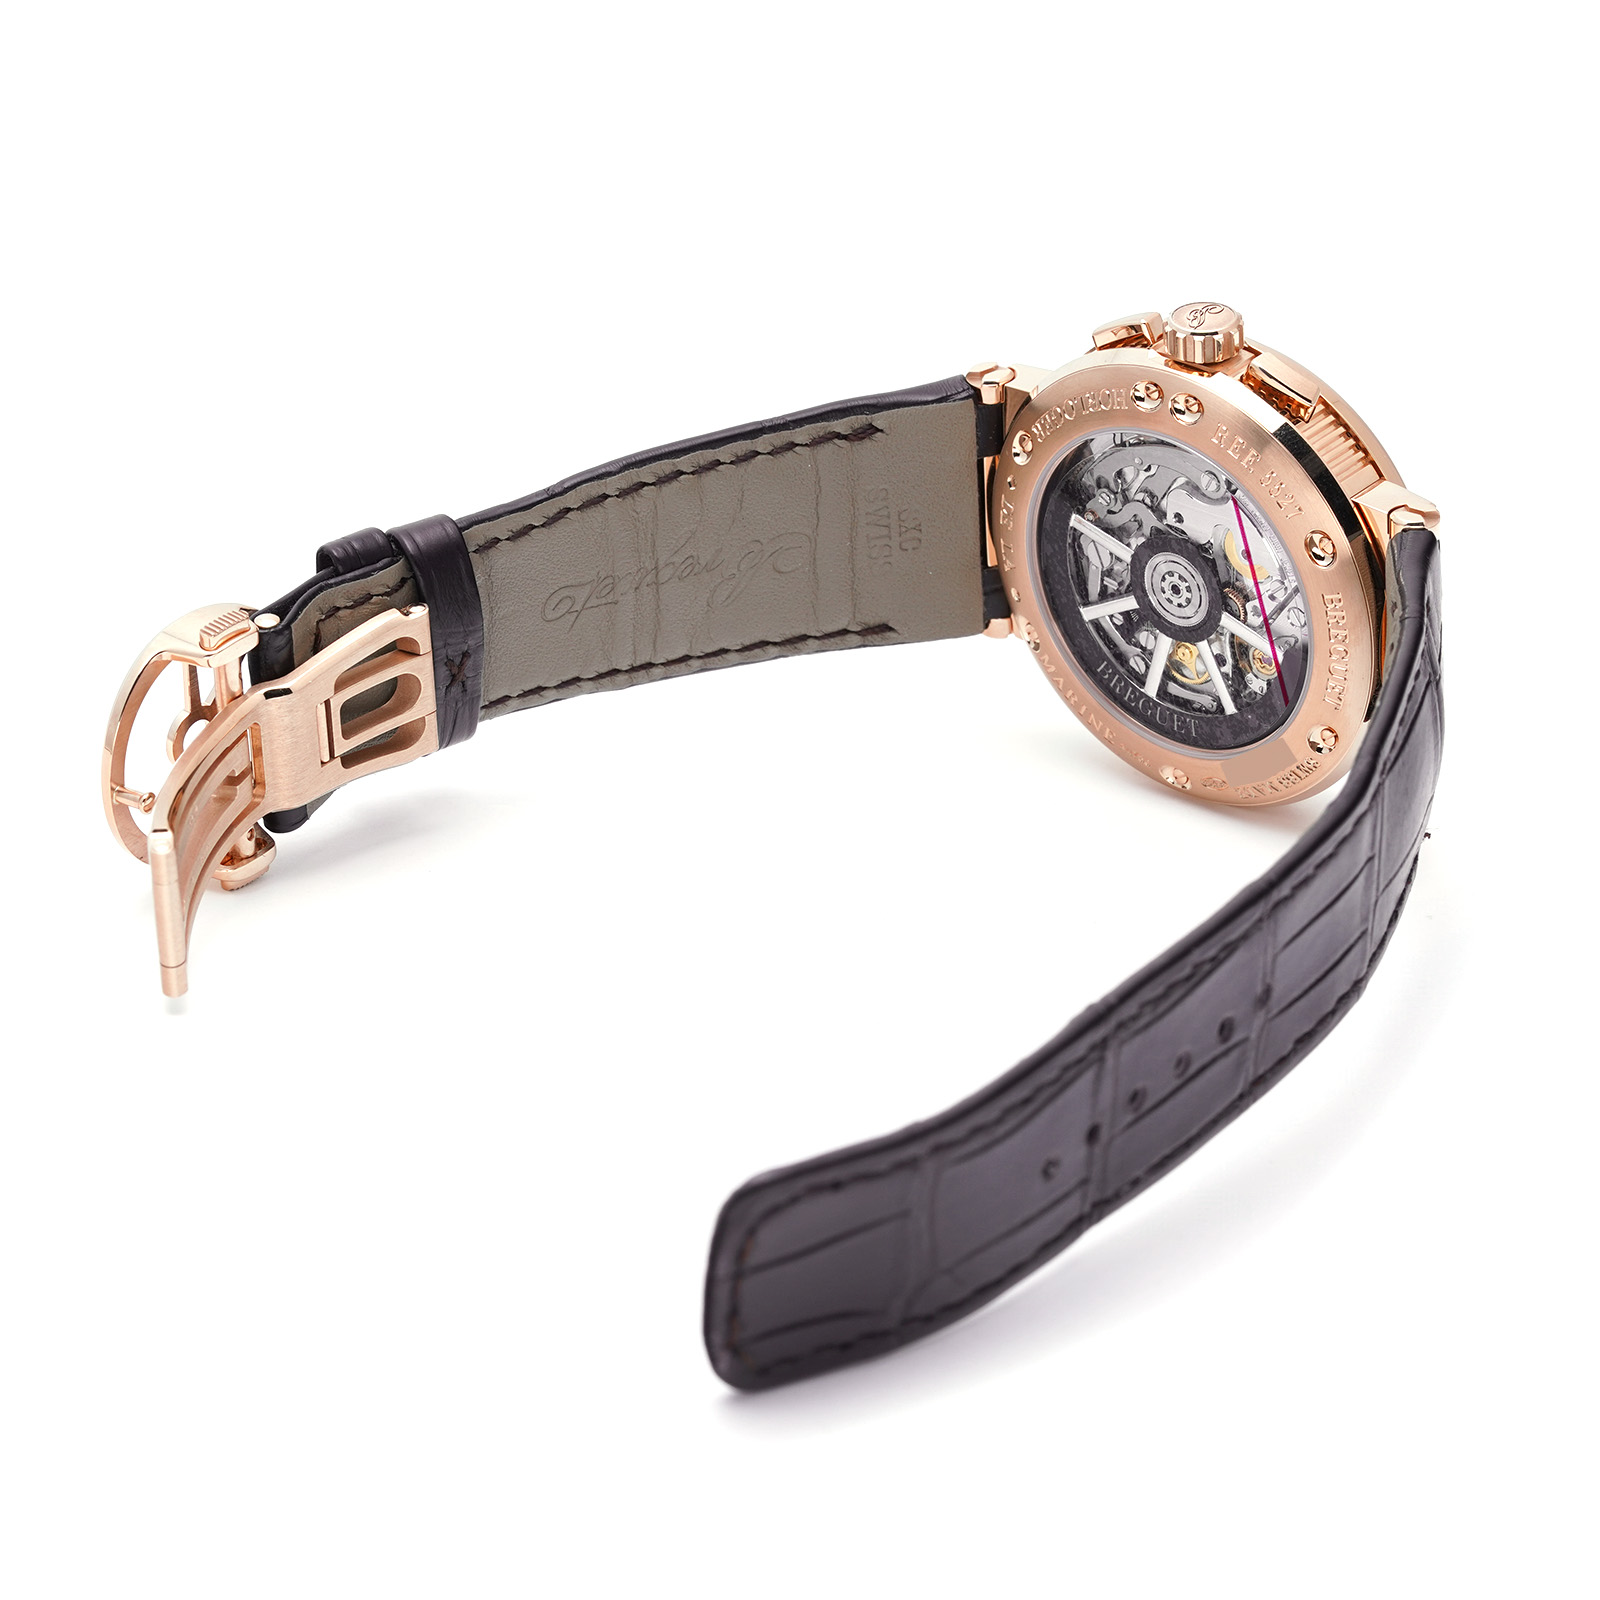 有名な 中古 ブレゲ Breguet マリーン クロノグラフ 5527BR G3 9WV スレートグレー メンズ 腕時計 hanuinosato.jp